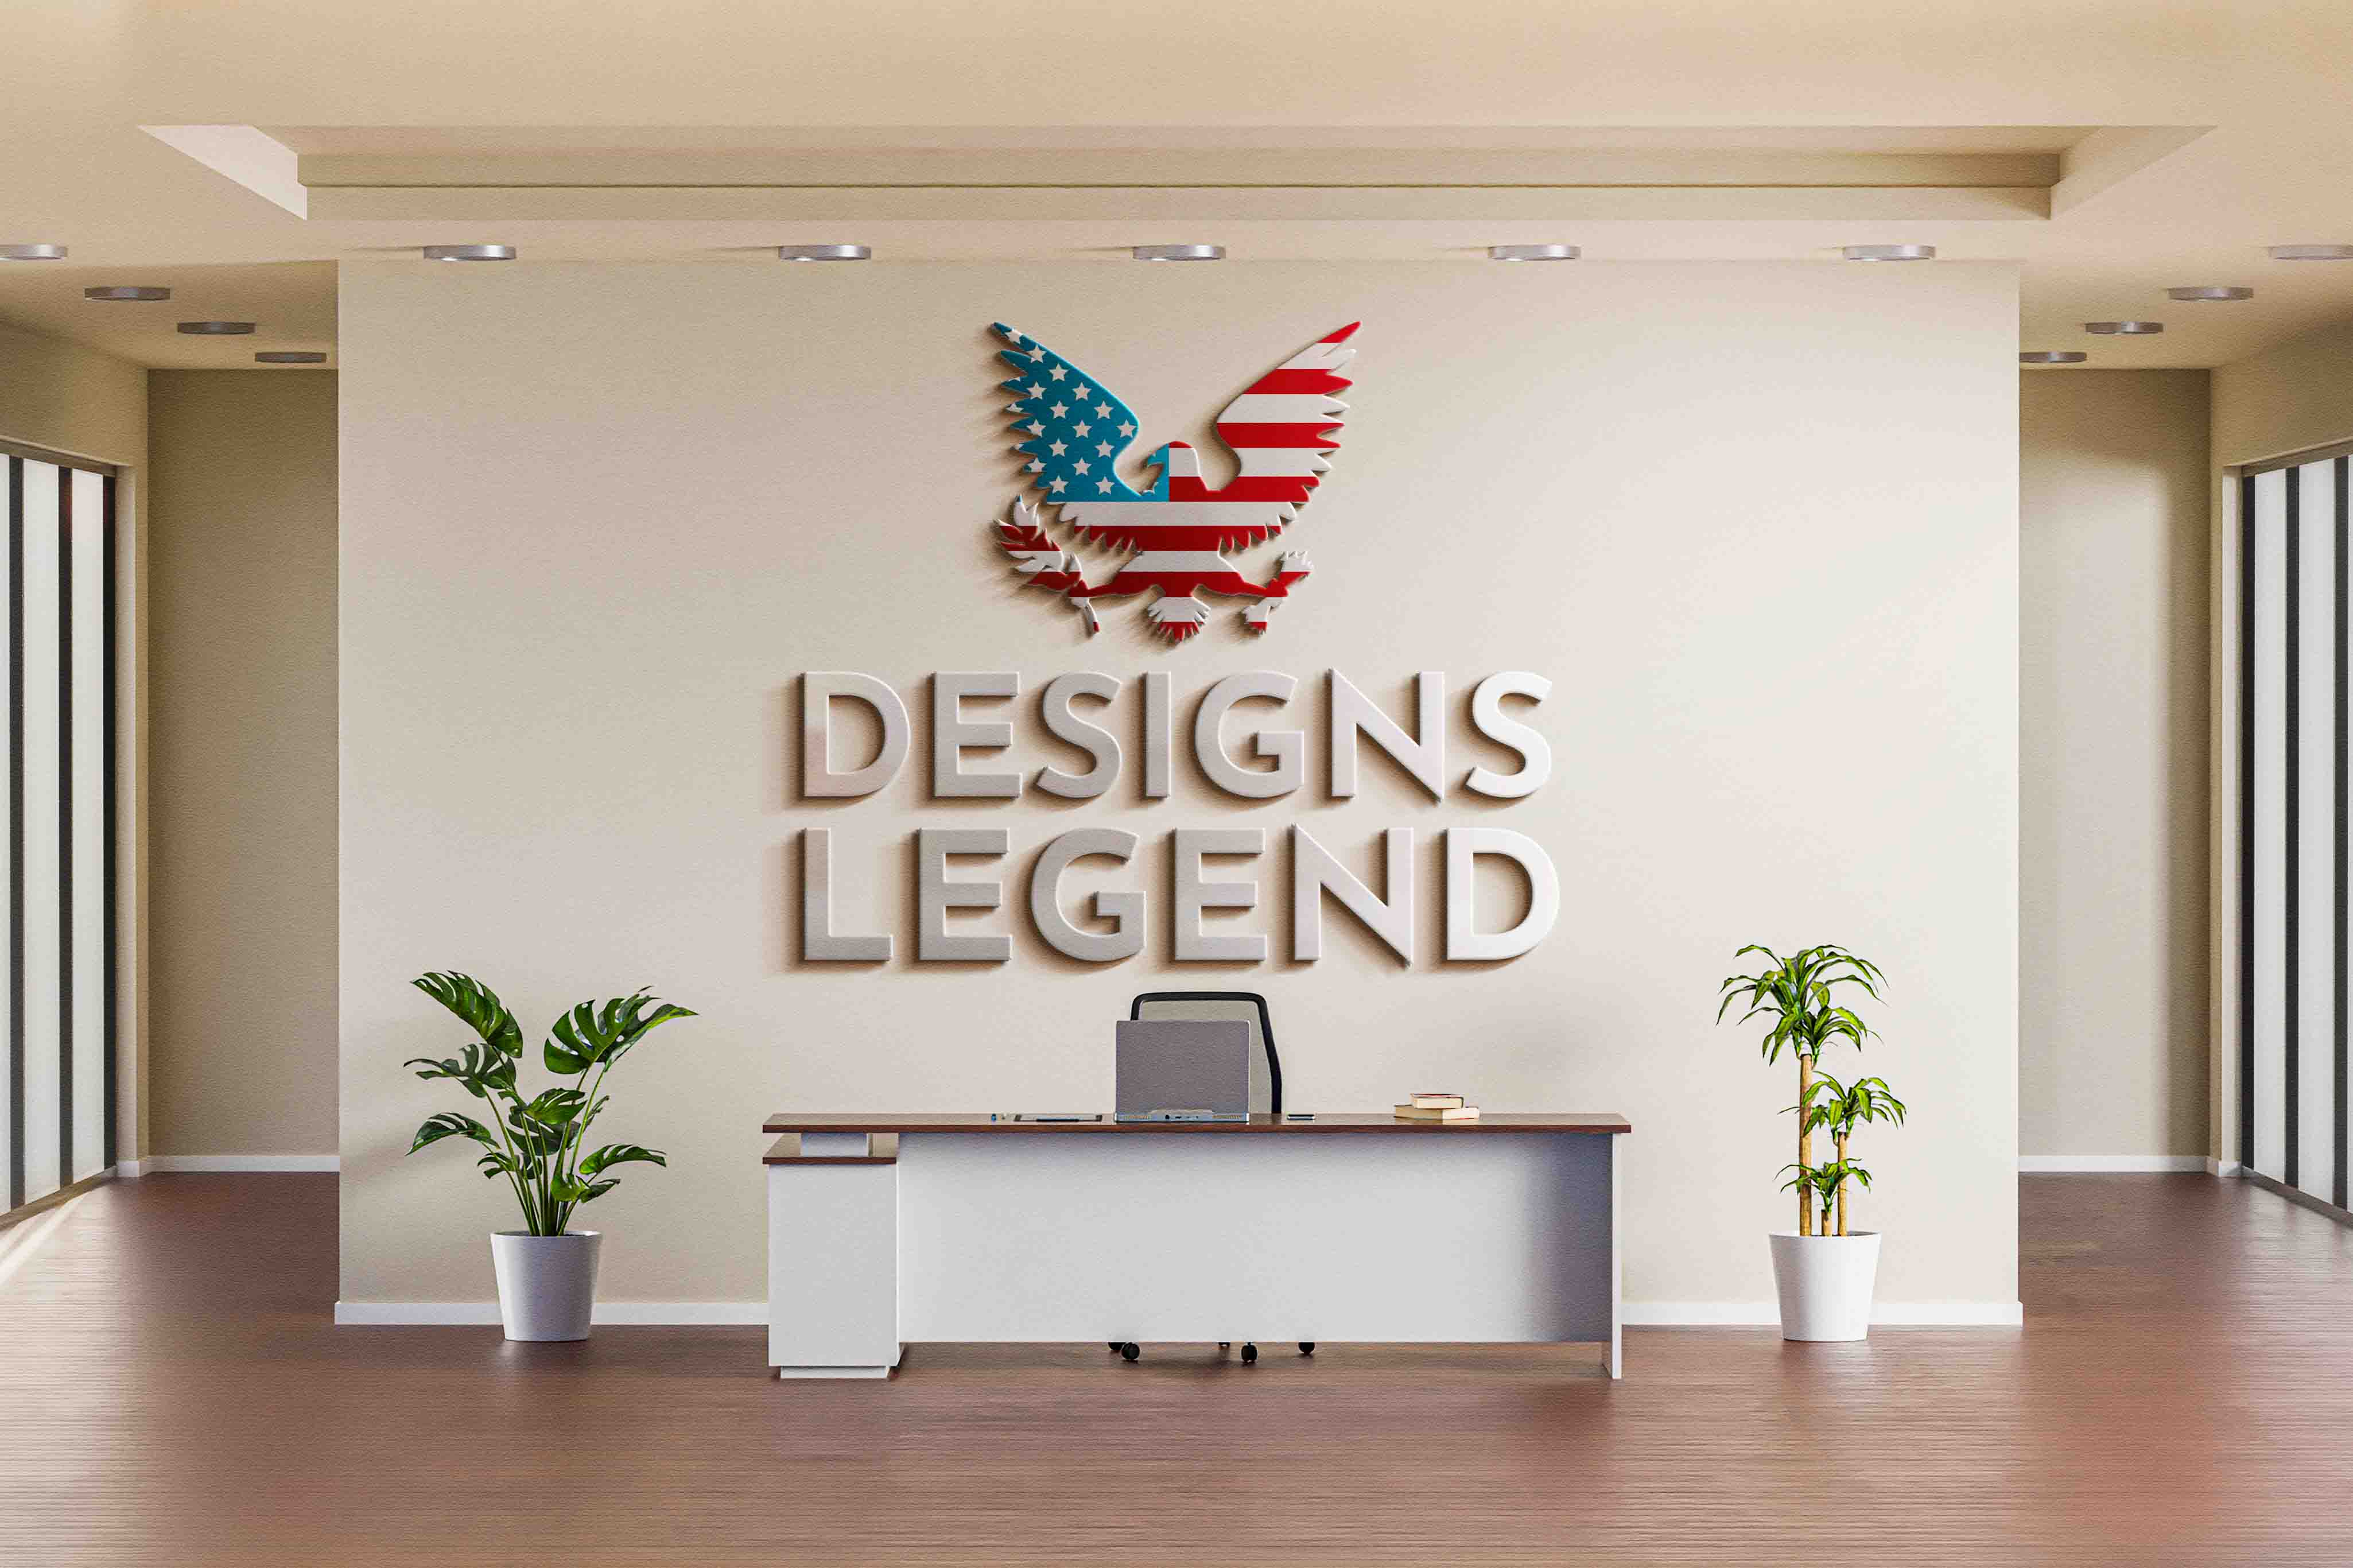 Designslegend - Dallas, TX, US, graphics designing